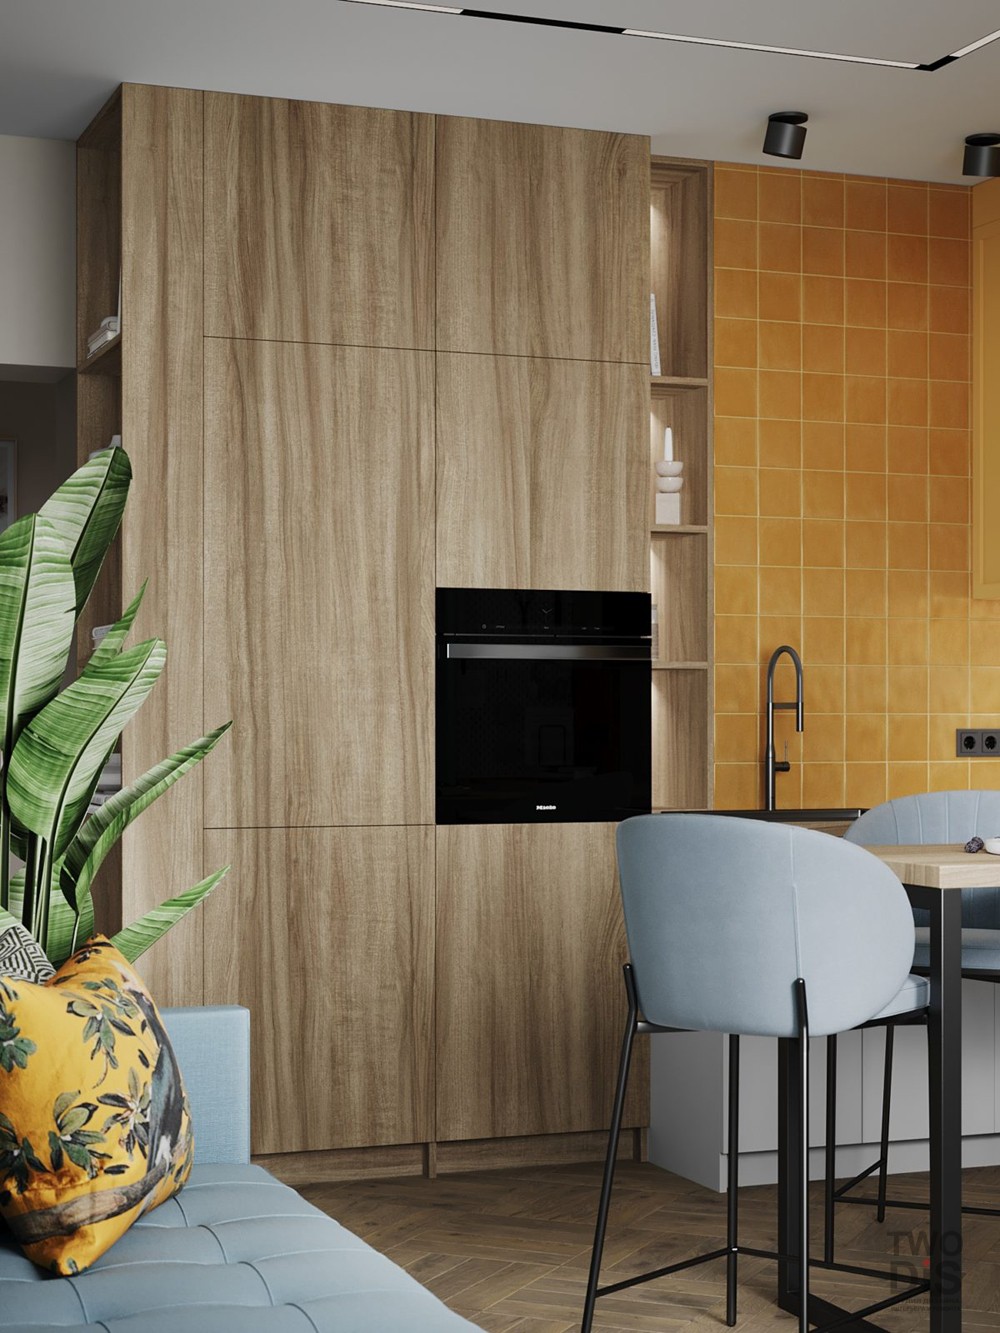 Дизайн интерьера квартиры ЖК Ариосто - кухня двухкомнатной квартиры, Санкт-Петербург